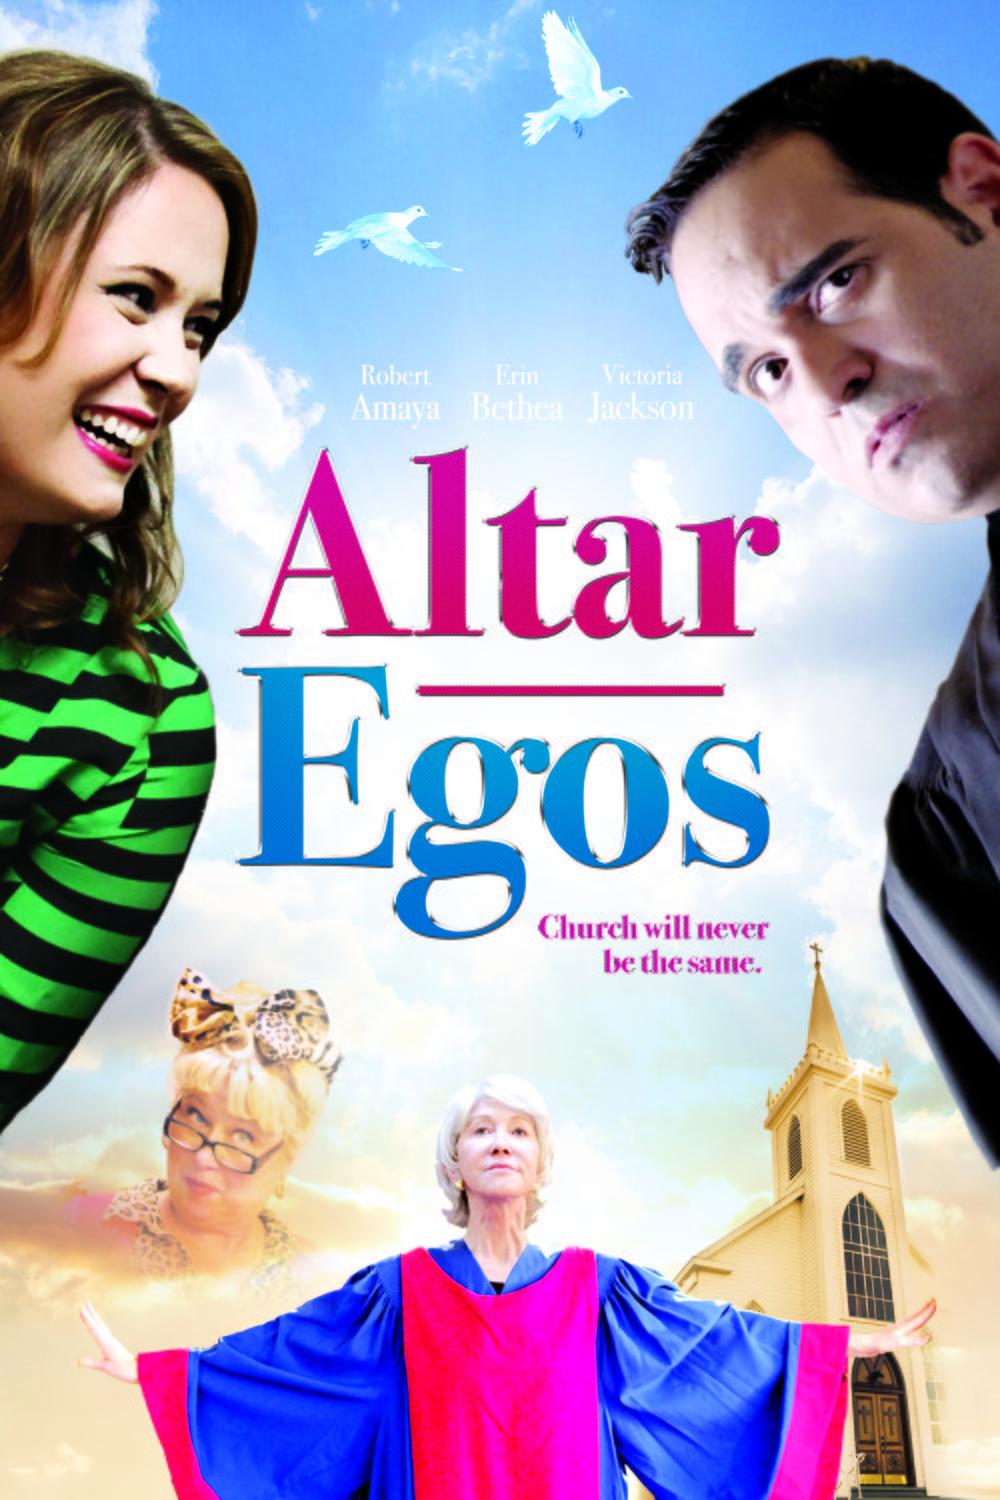 L'affiche du film Altar Egos